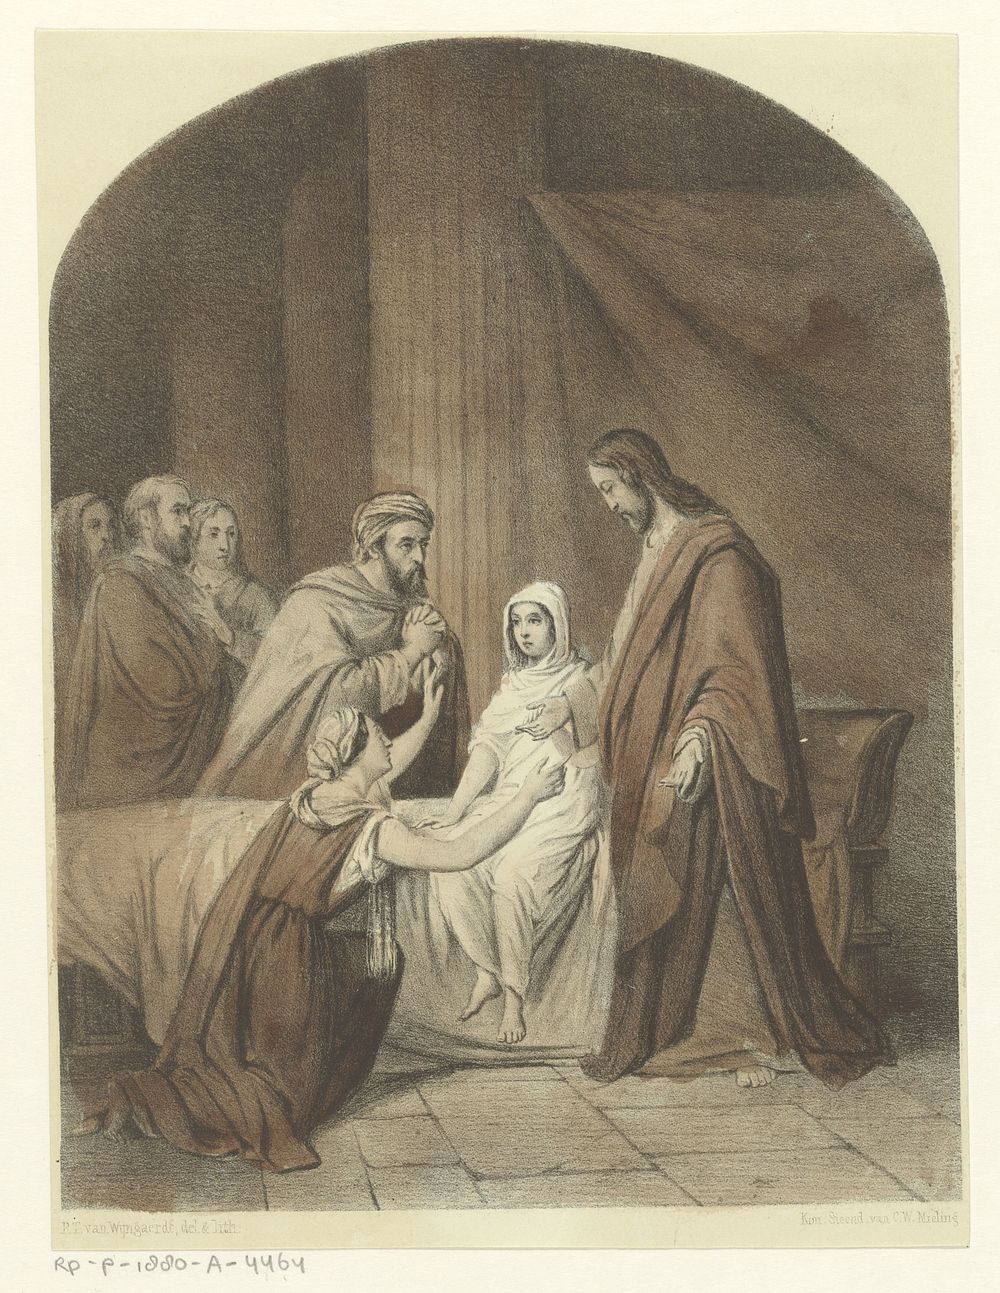 Opwekking van de dochter van Jaïrus (1847 - 1849) by Petrus Theodorus van Wijngaerdt, Petrus Theodorus van Wijngaerdt and…